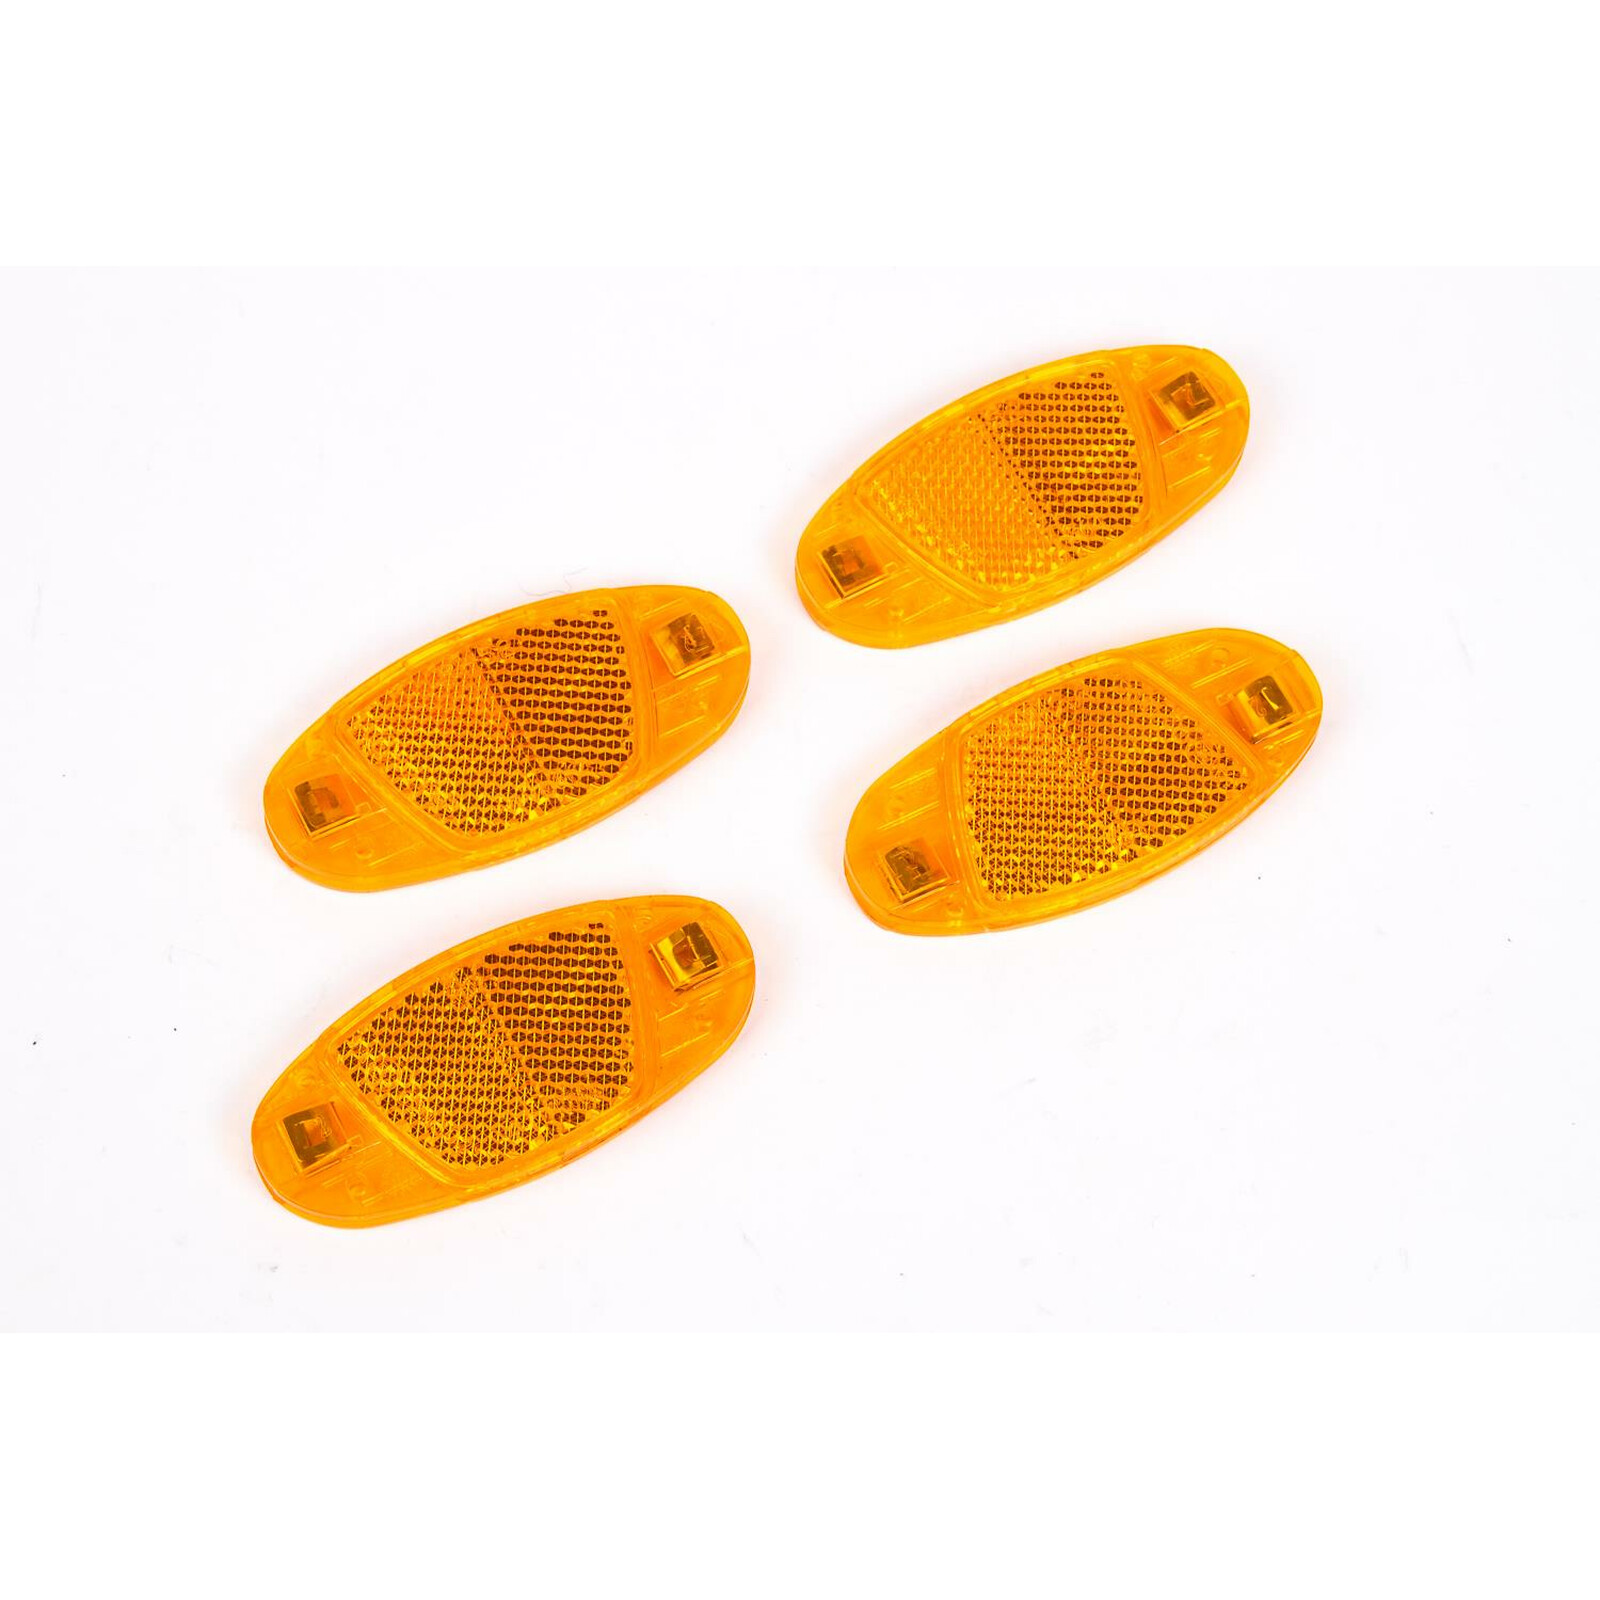 https://www.radversender.de/media/image/product/7317/lg/4-stueck-fahrrad-speichen-reflektoren-speichenstrahler-set-katzenaugen-strahler-orange-gelb.jpg